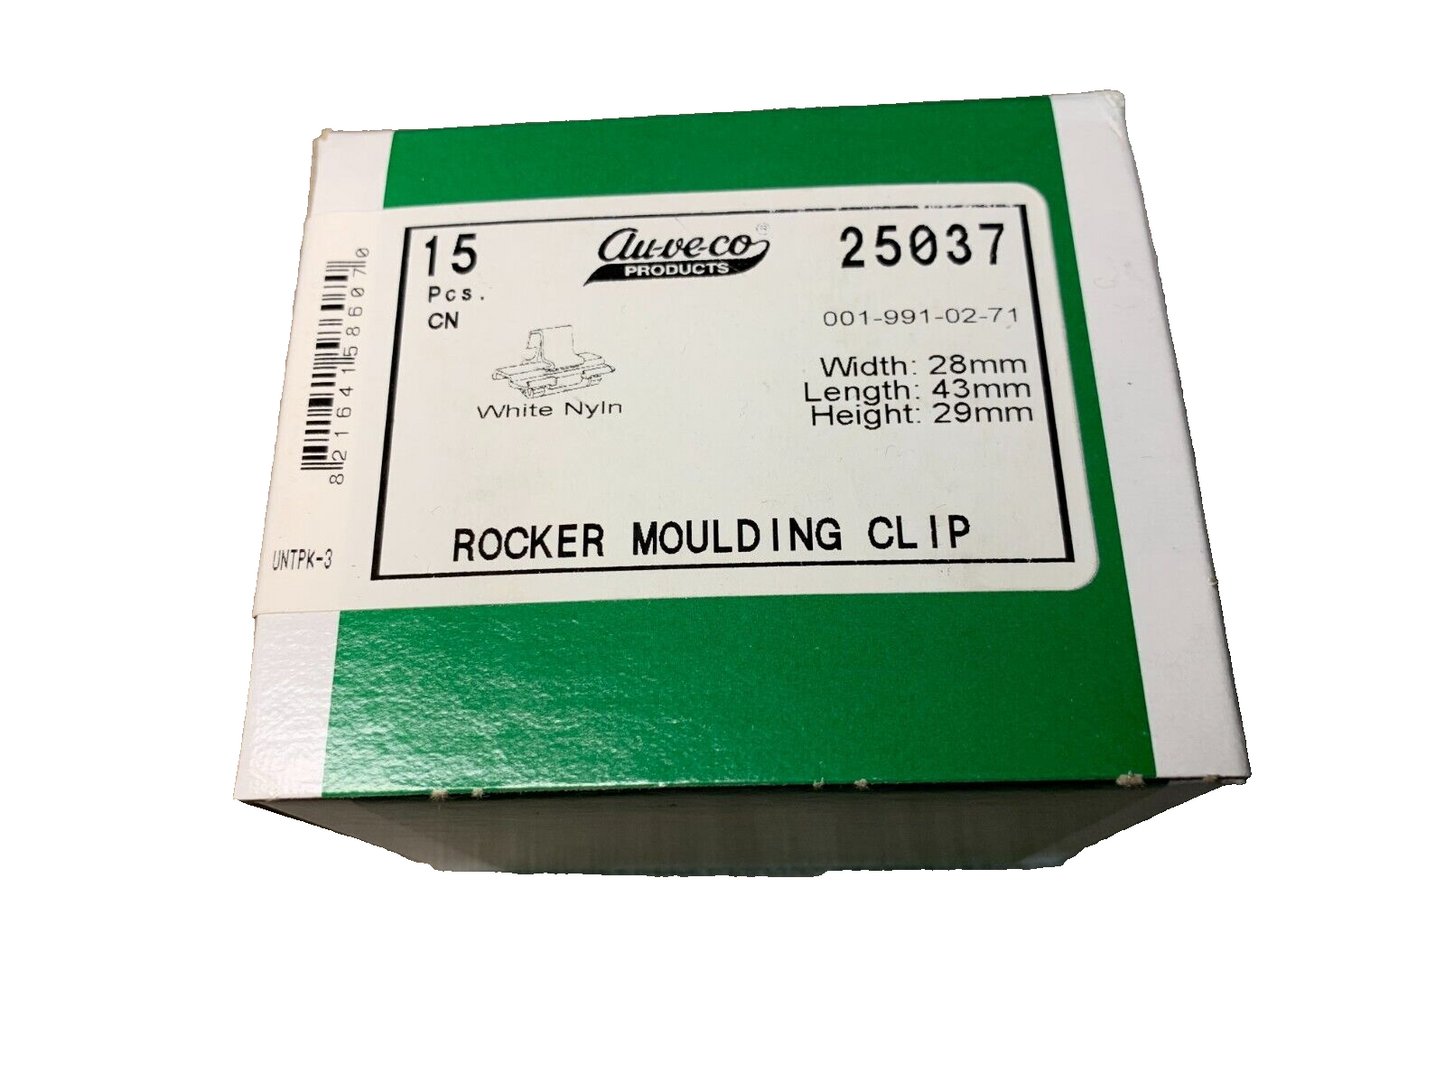 15 Auveco 25037 Rocker Moulding Clip for Merced 001-991-02-71